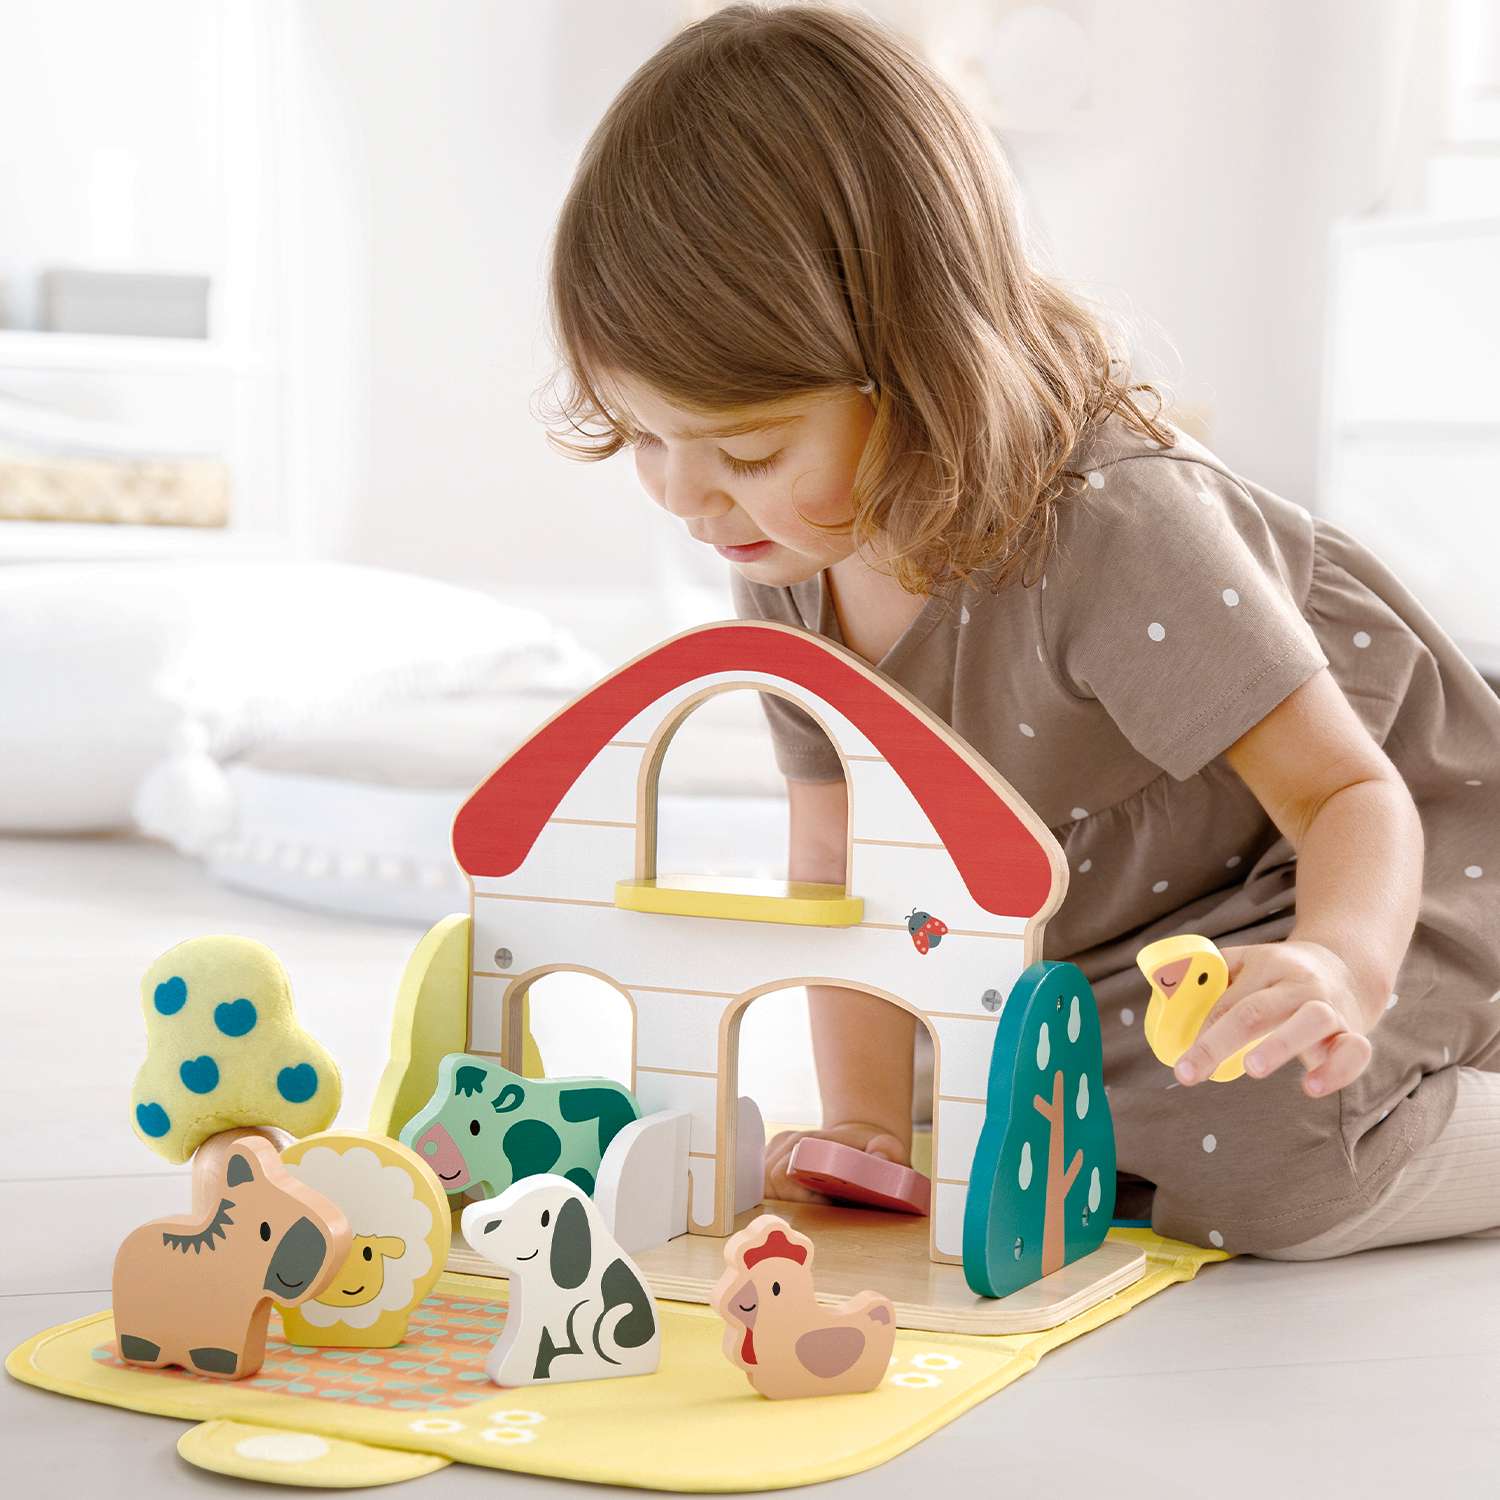 Развивающая игрушка для детей Hape Ферма коврик и фигурки животных серия пастель E8538_HP - фото 1